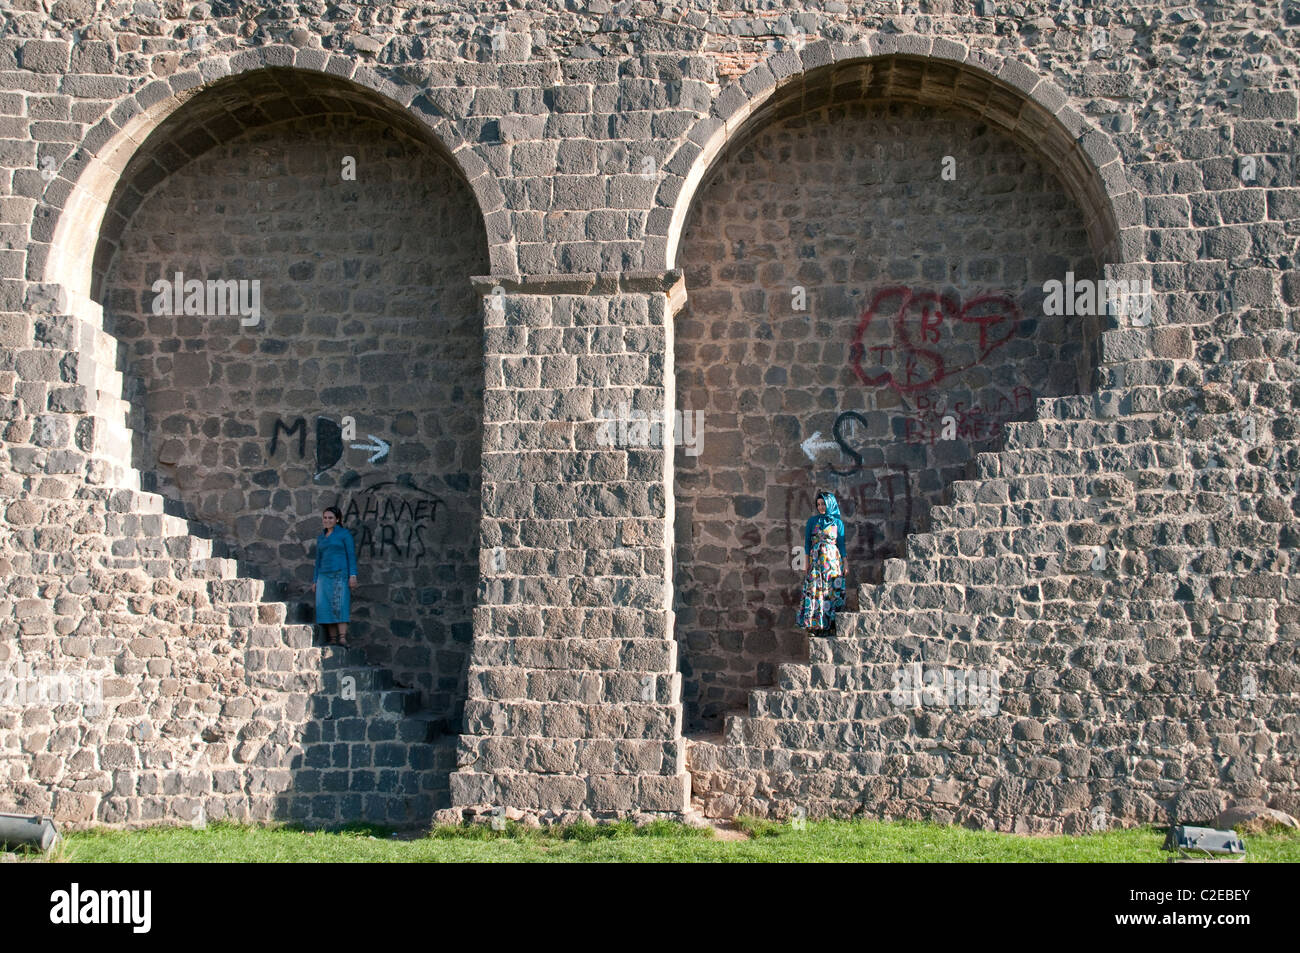 Due donne si trovano in una nicchia a forma di cuore nelle vecchie mura della fortezza di basalto della città curda di Diyarbakir, nella regione orientale dell'Anatolia della Turchia. Foto Stock